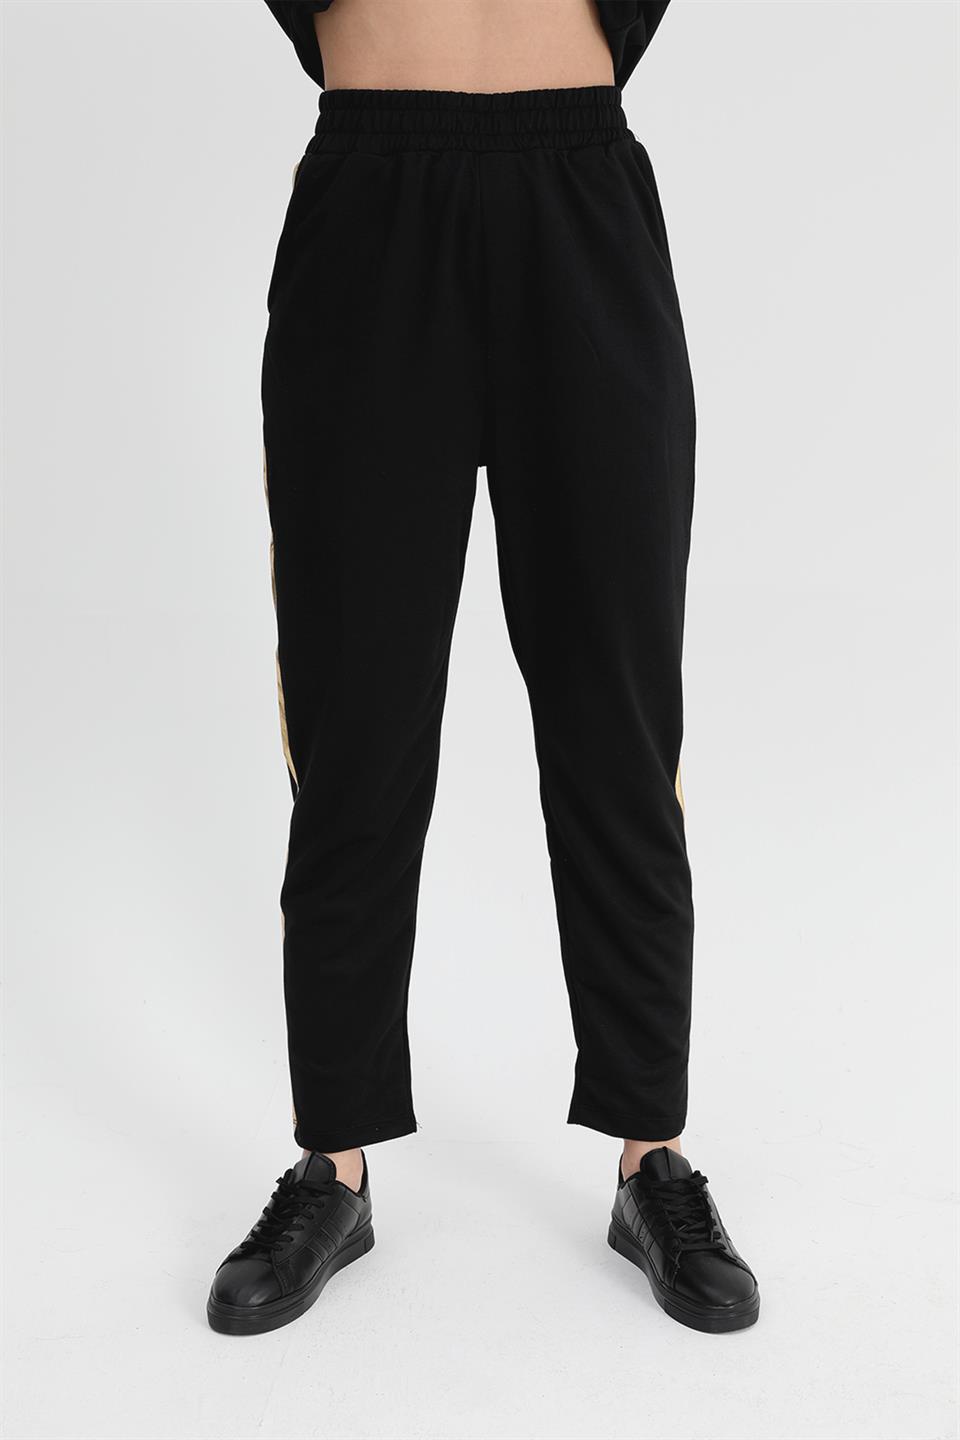 Women's Suit Skirt Grass Bird Printed Elastic Waist T-shirt Trousers - Black - STREETMODE™